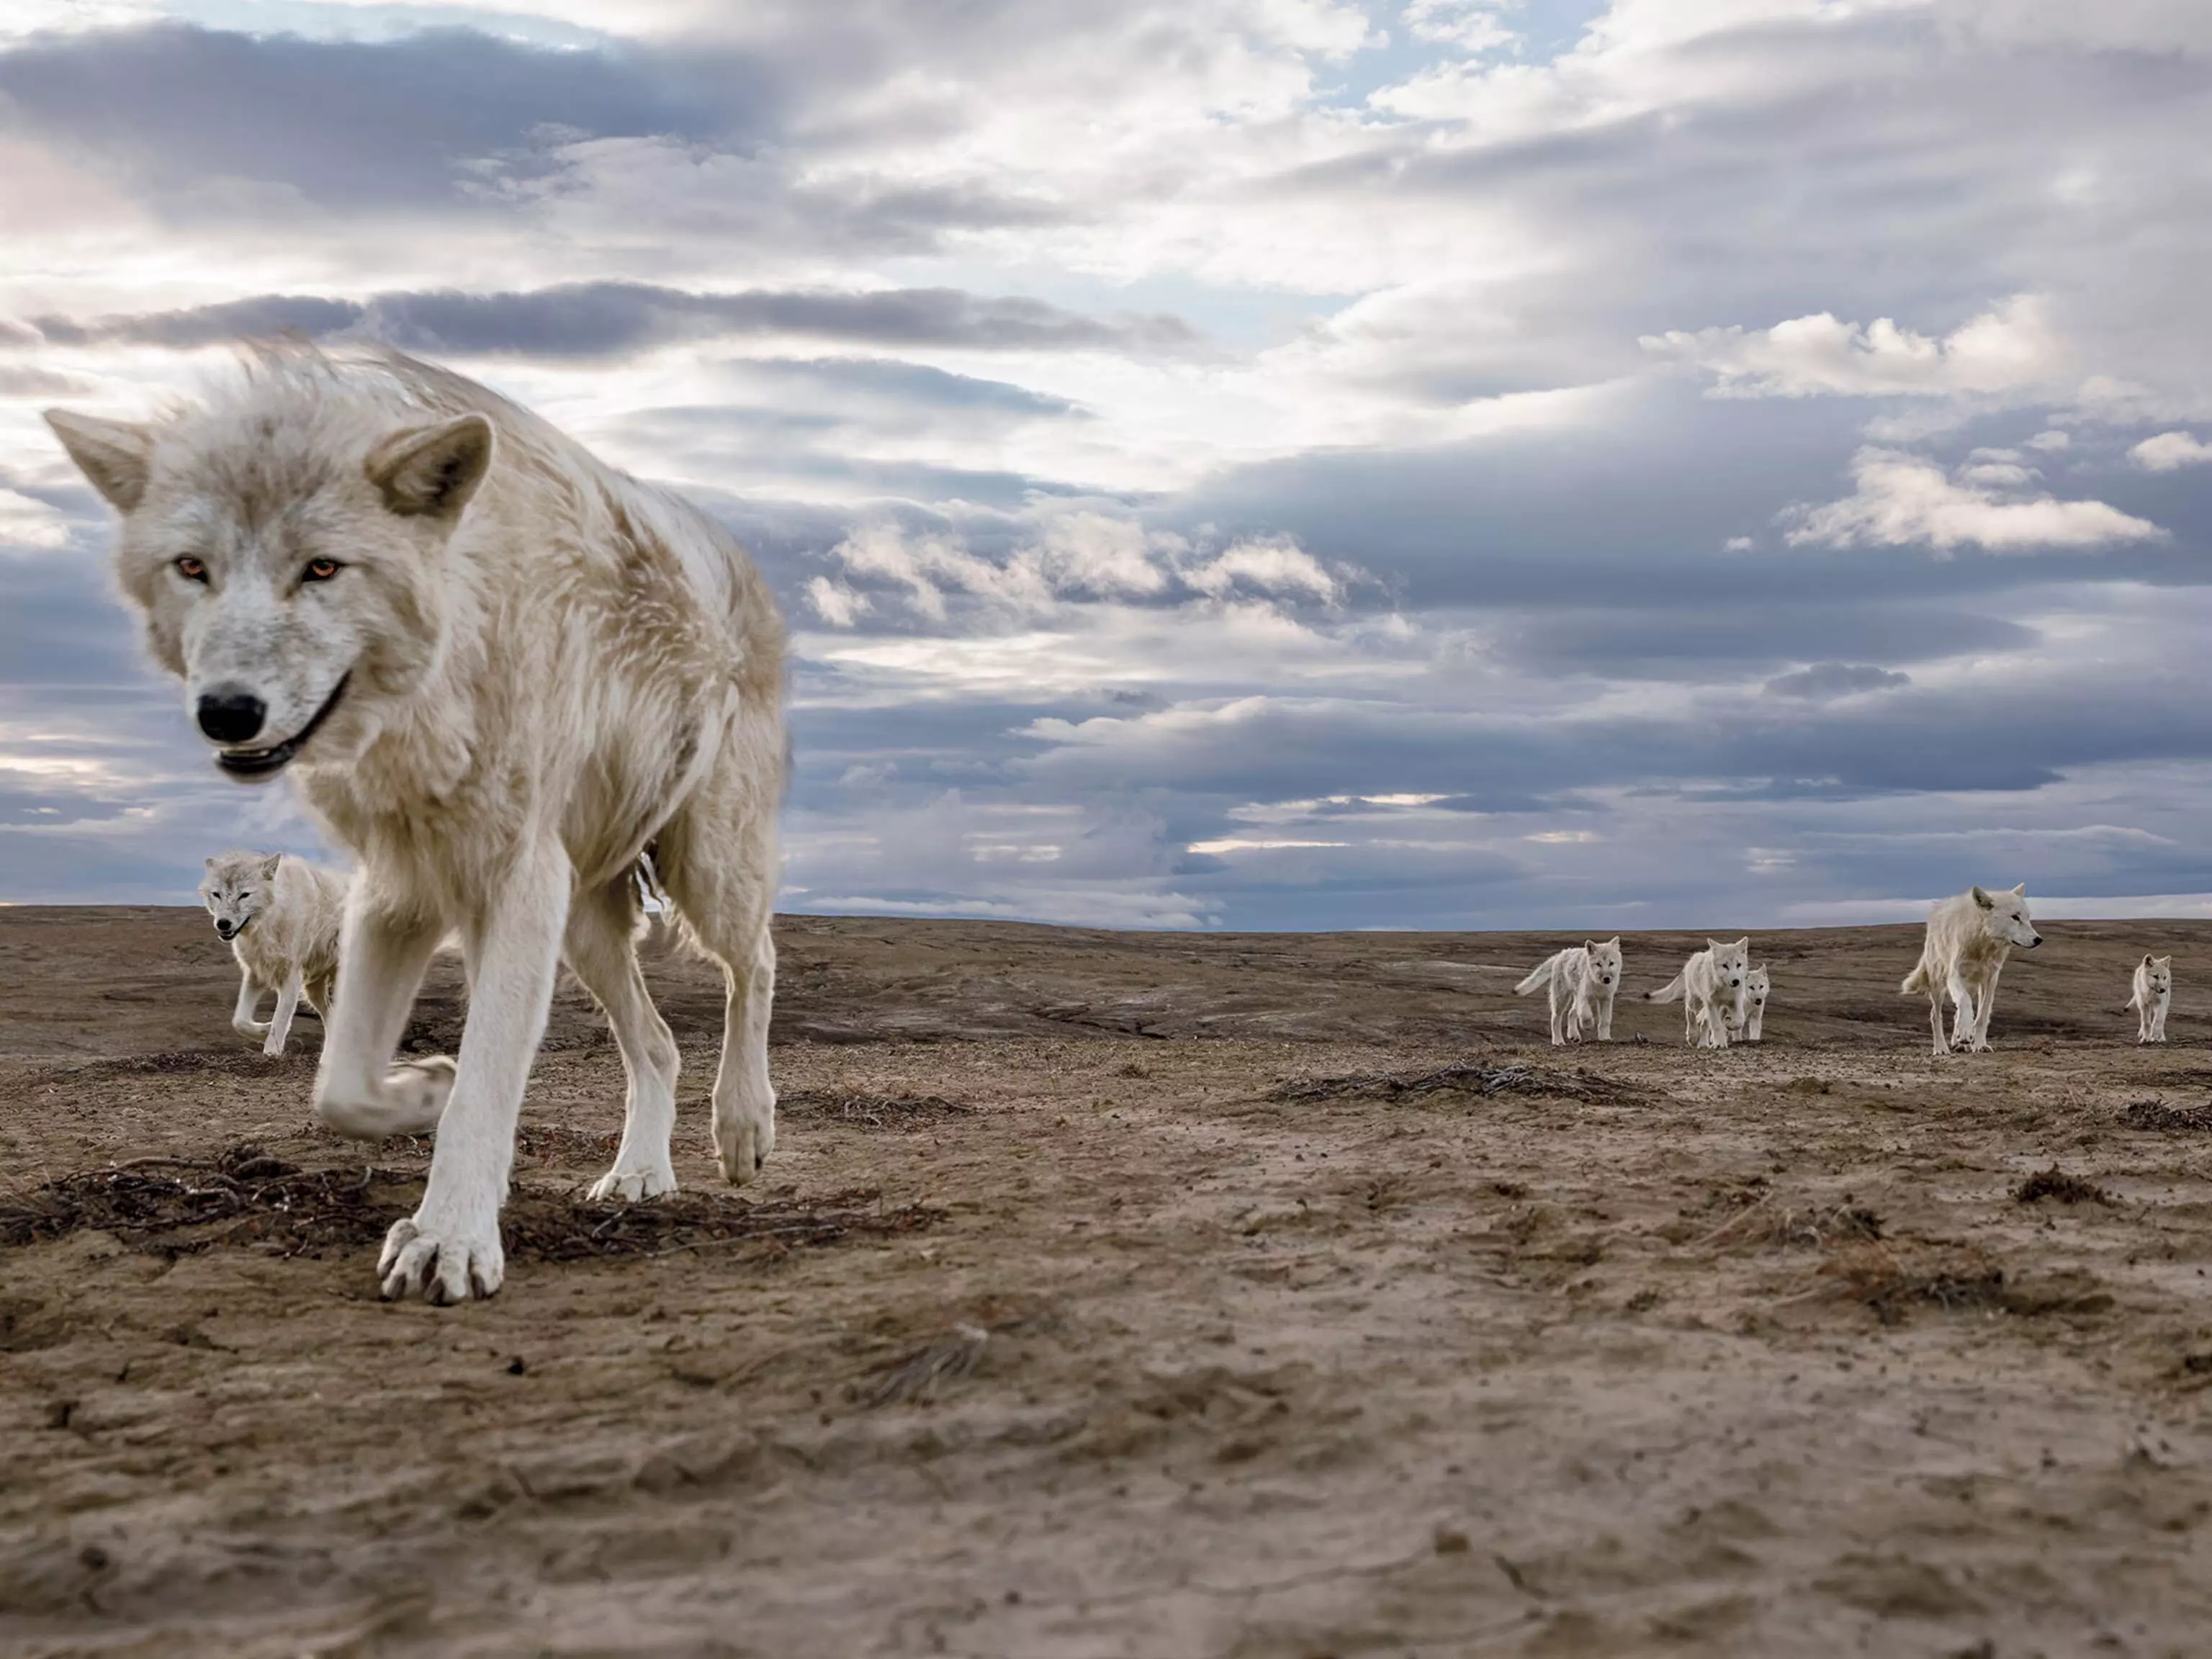 ENVIRONMENT:  भेड़िये पूरे अमेरिका में गायब हो गए, और हम अभी भी उससे हुए नुकसान का लगा रहे हैं पता